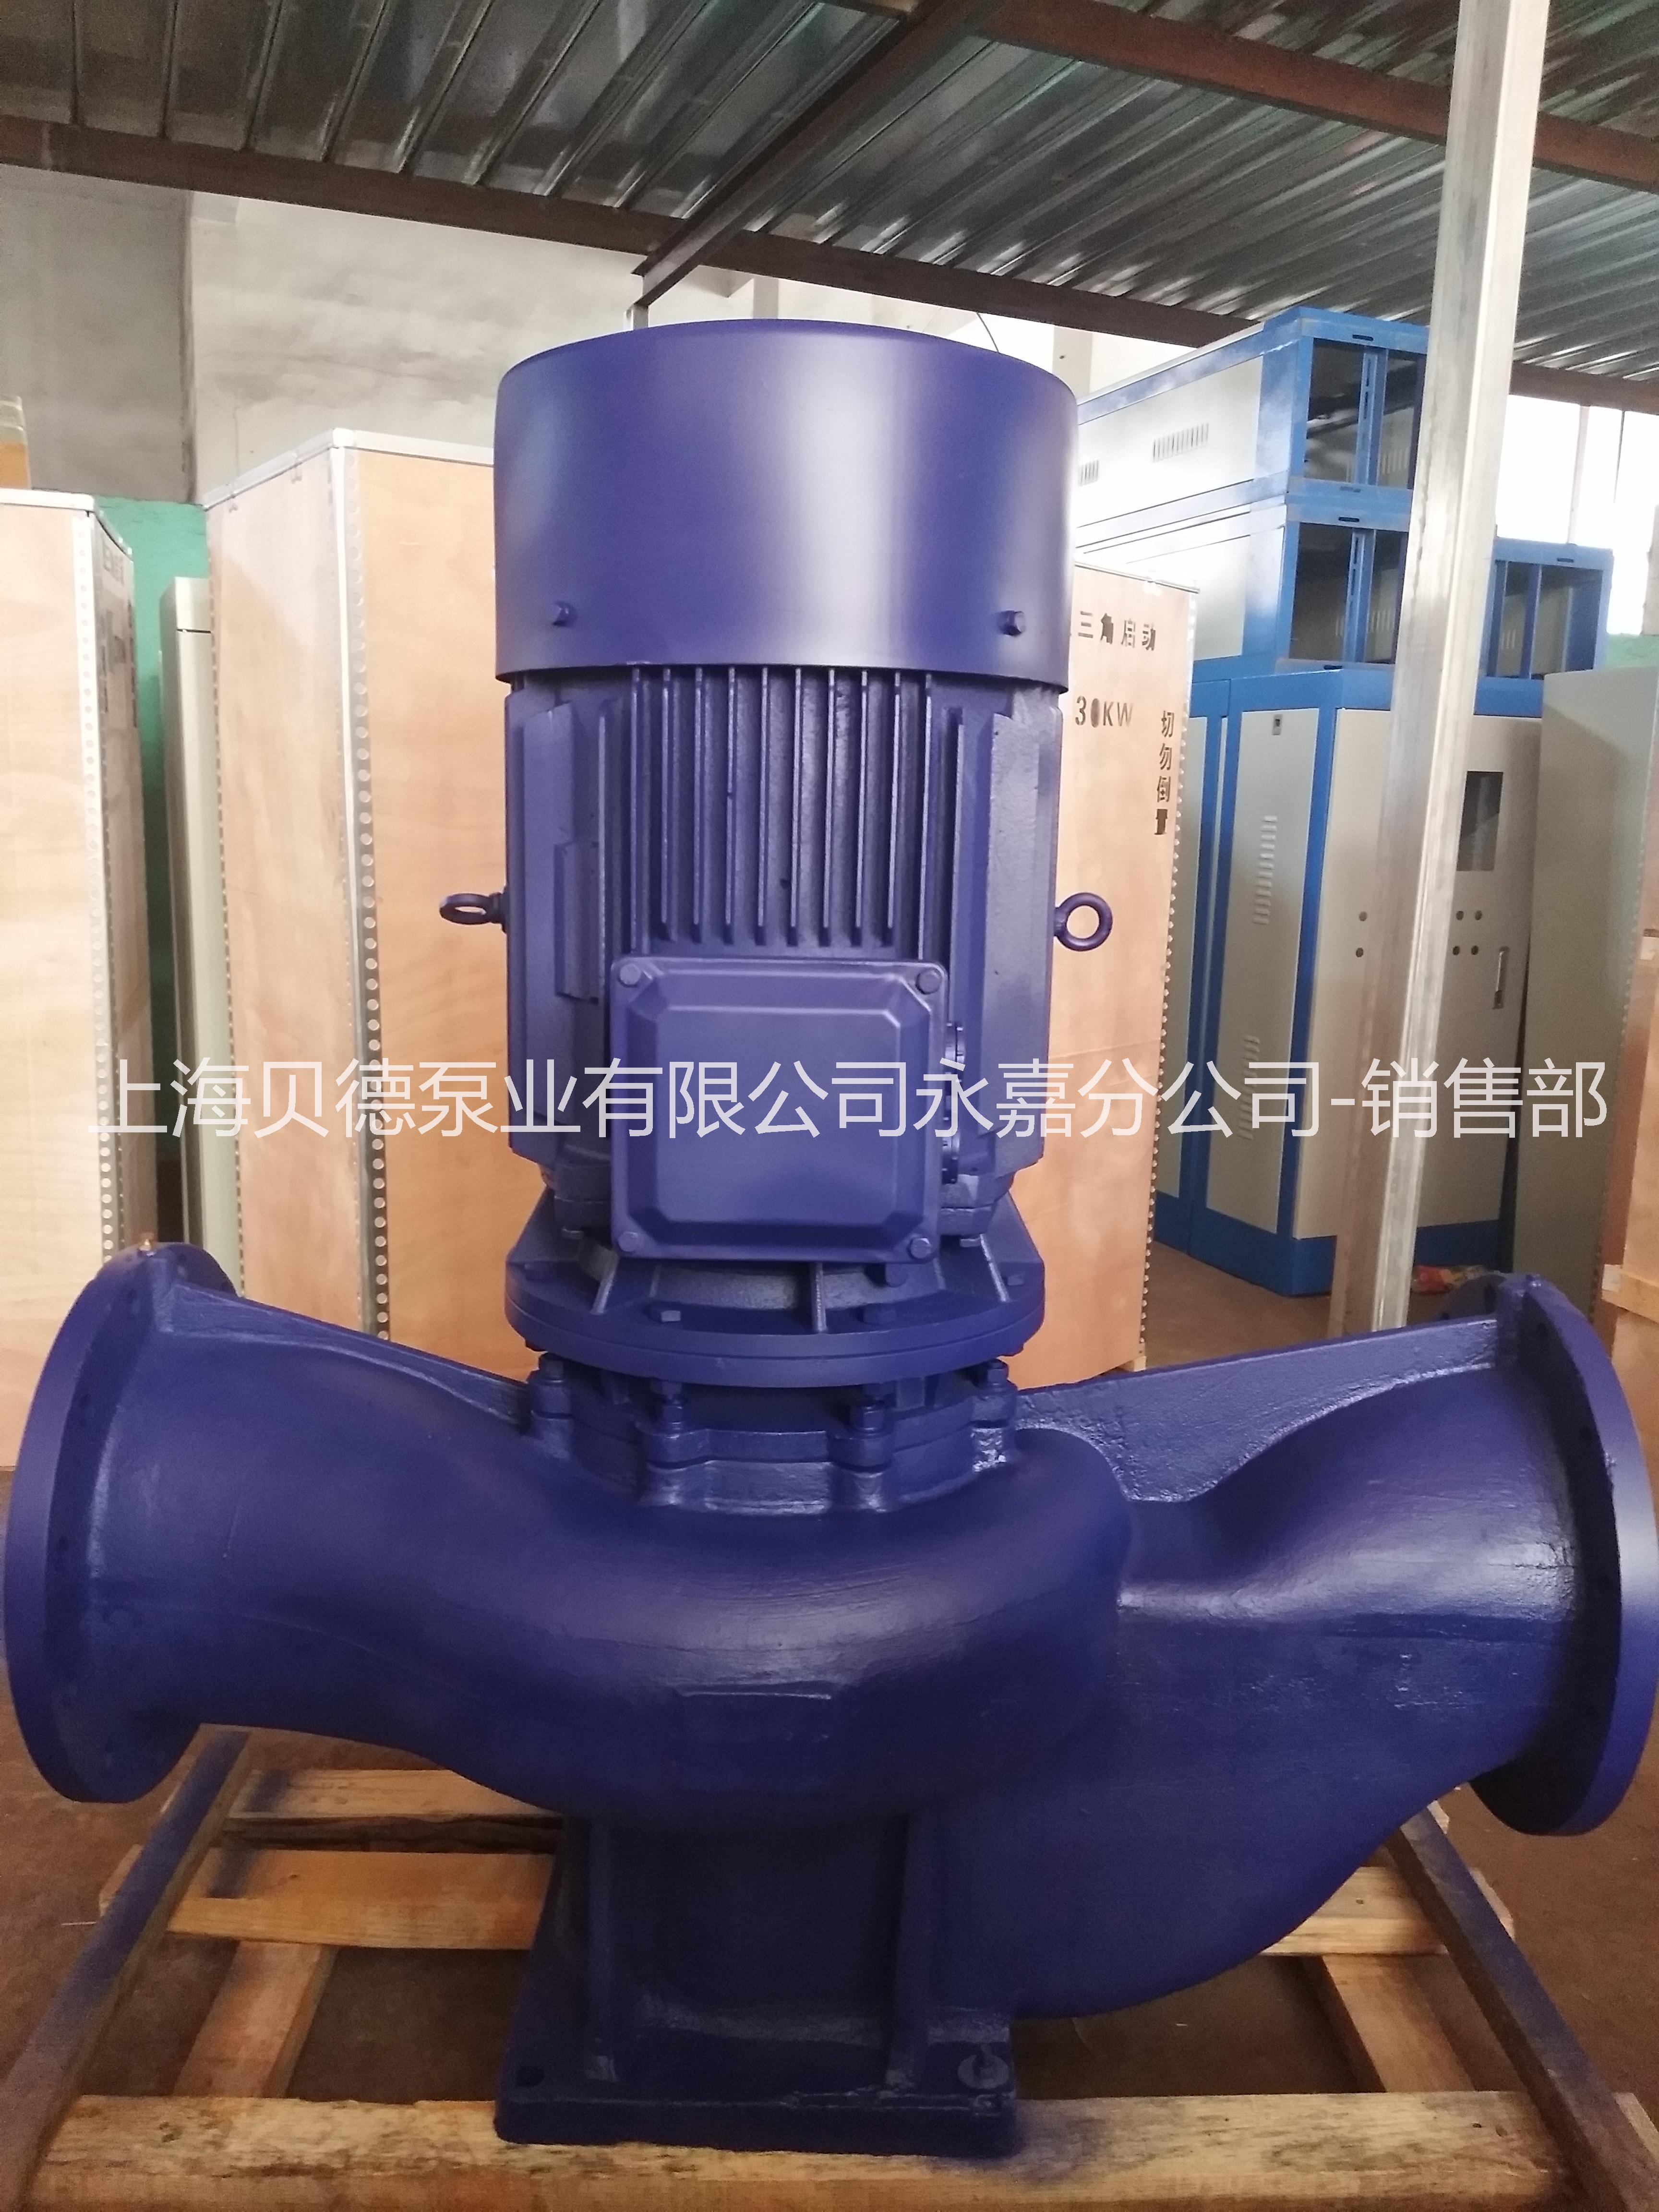 上海贝德泵业有限公司德州办事处ISG125-160  管道循环泵 自动单级单吸管道泵 IRG热水管道循环泵